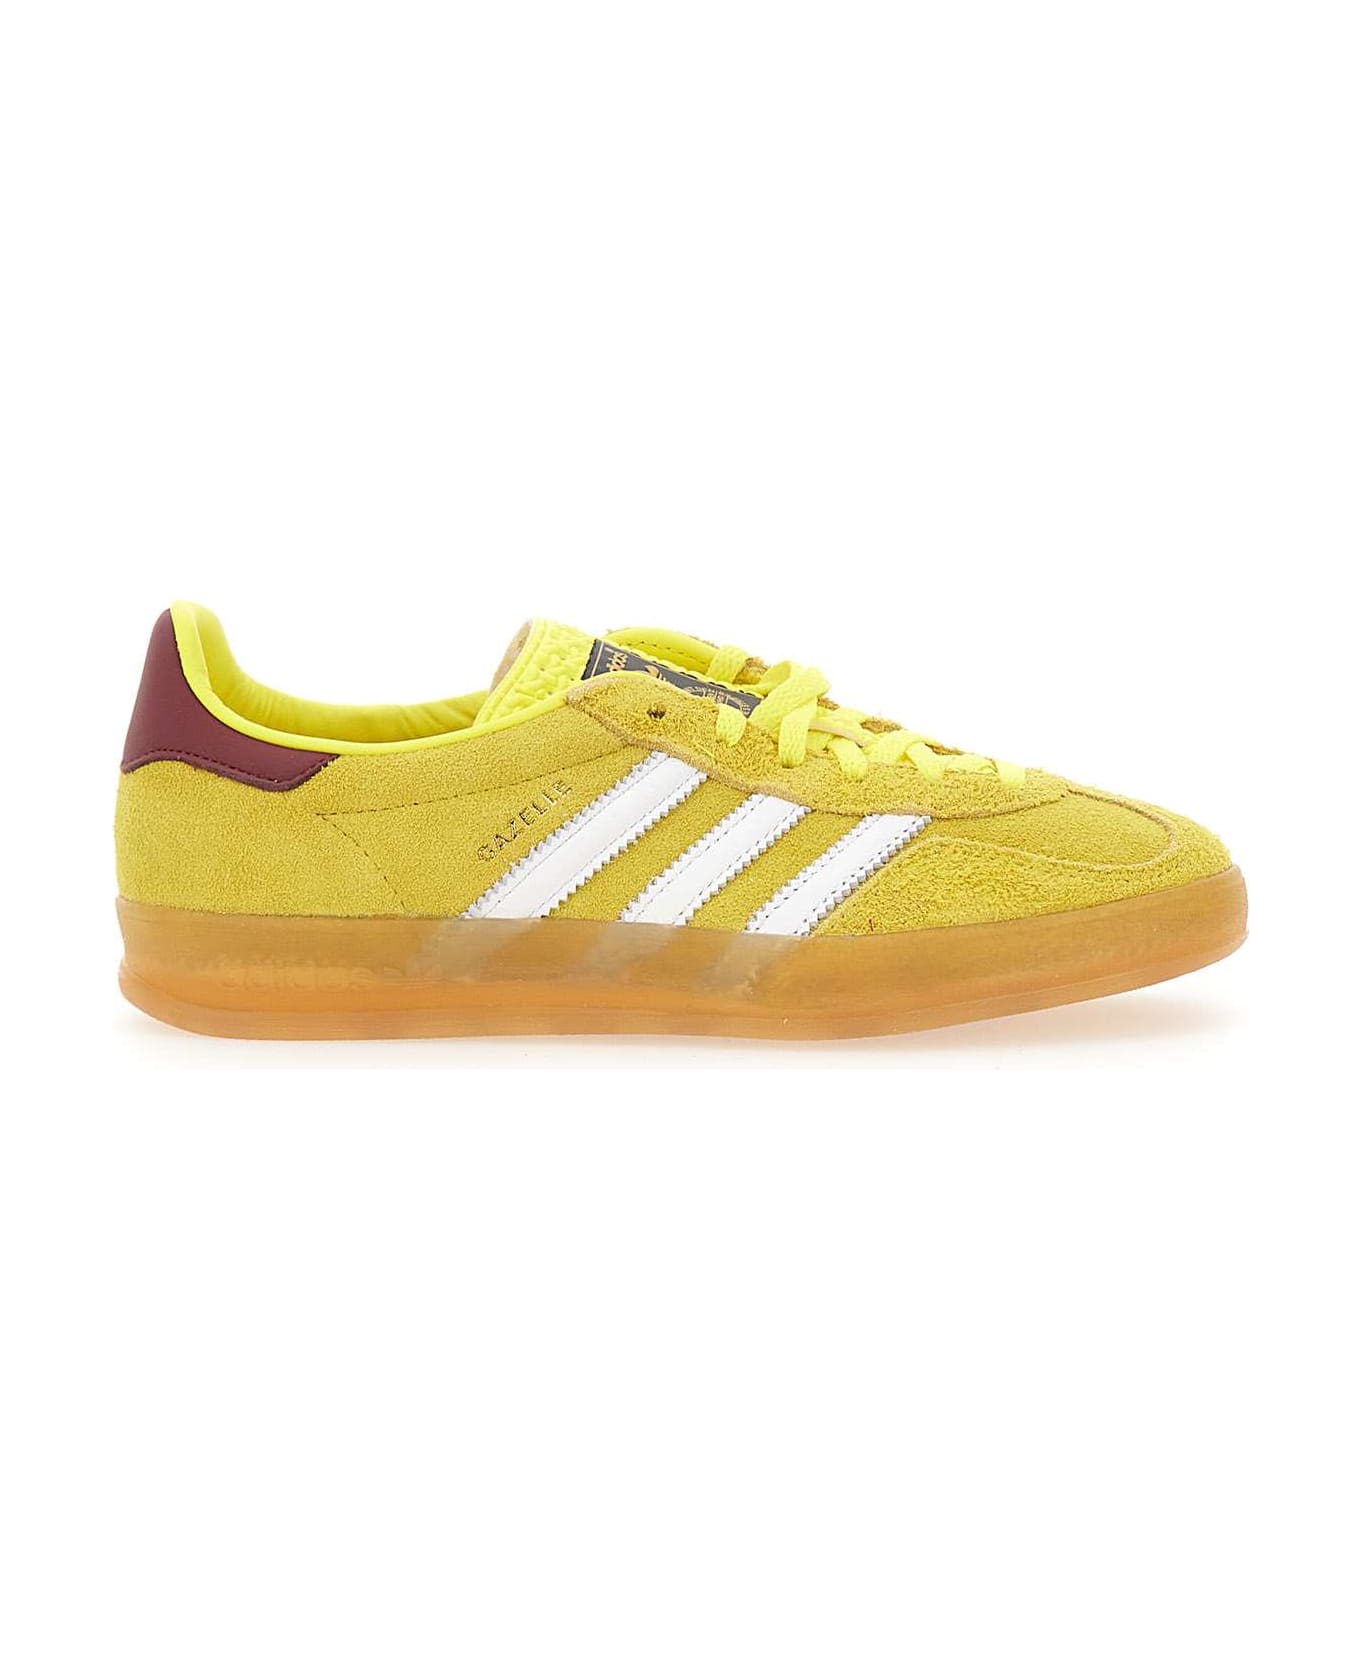 Adidas Originals 'gazelle Indoor' Suede Sneakers - Yellow